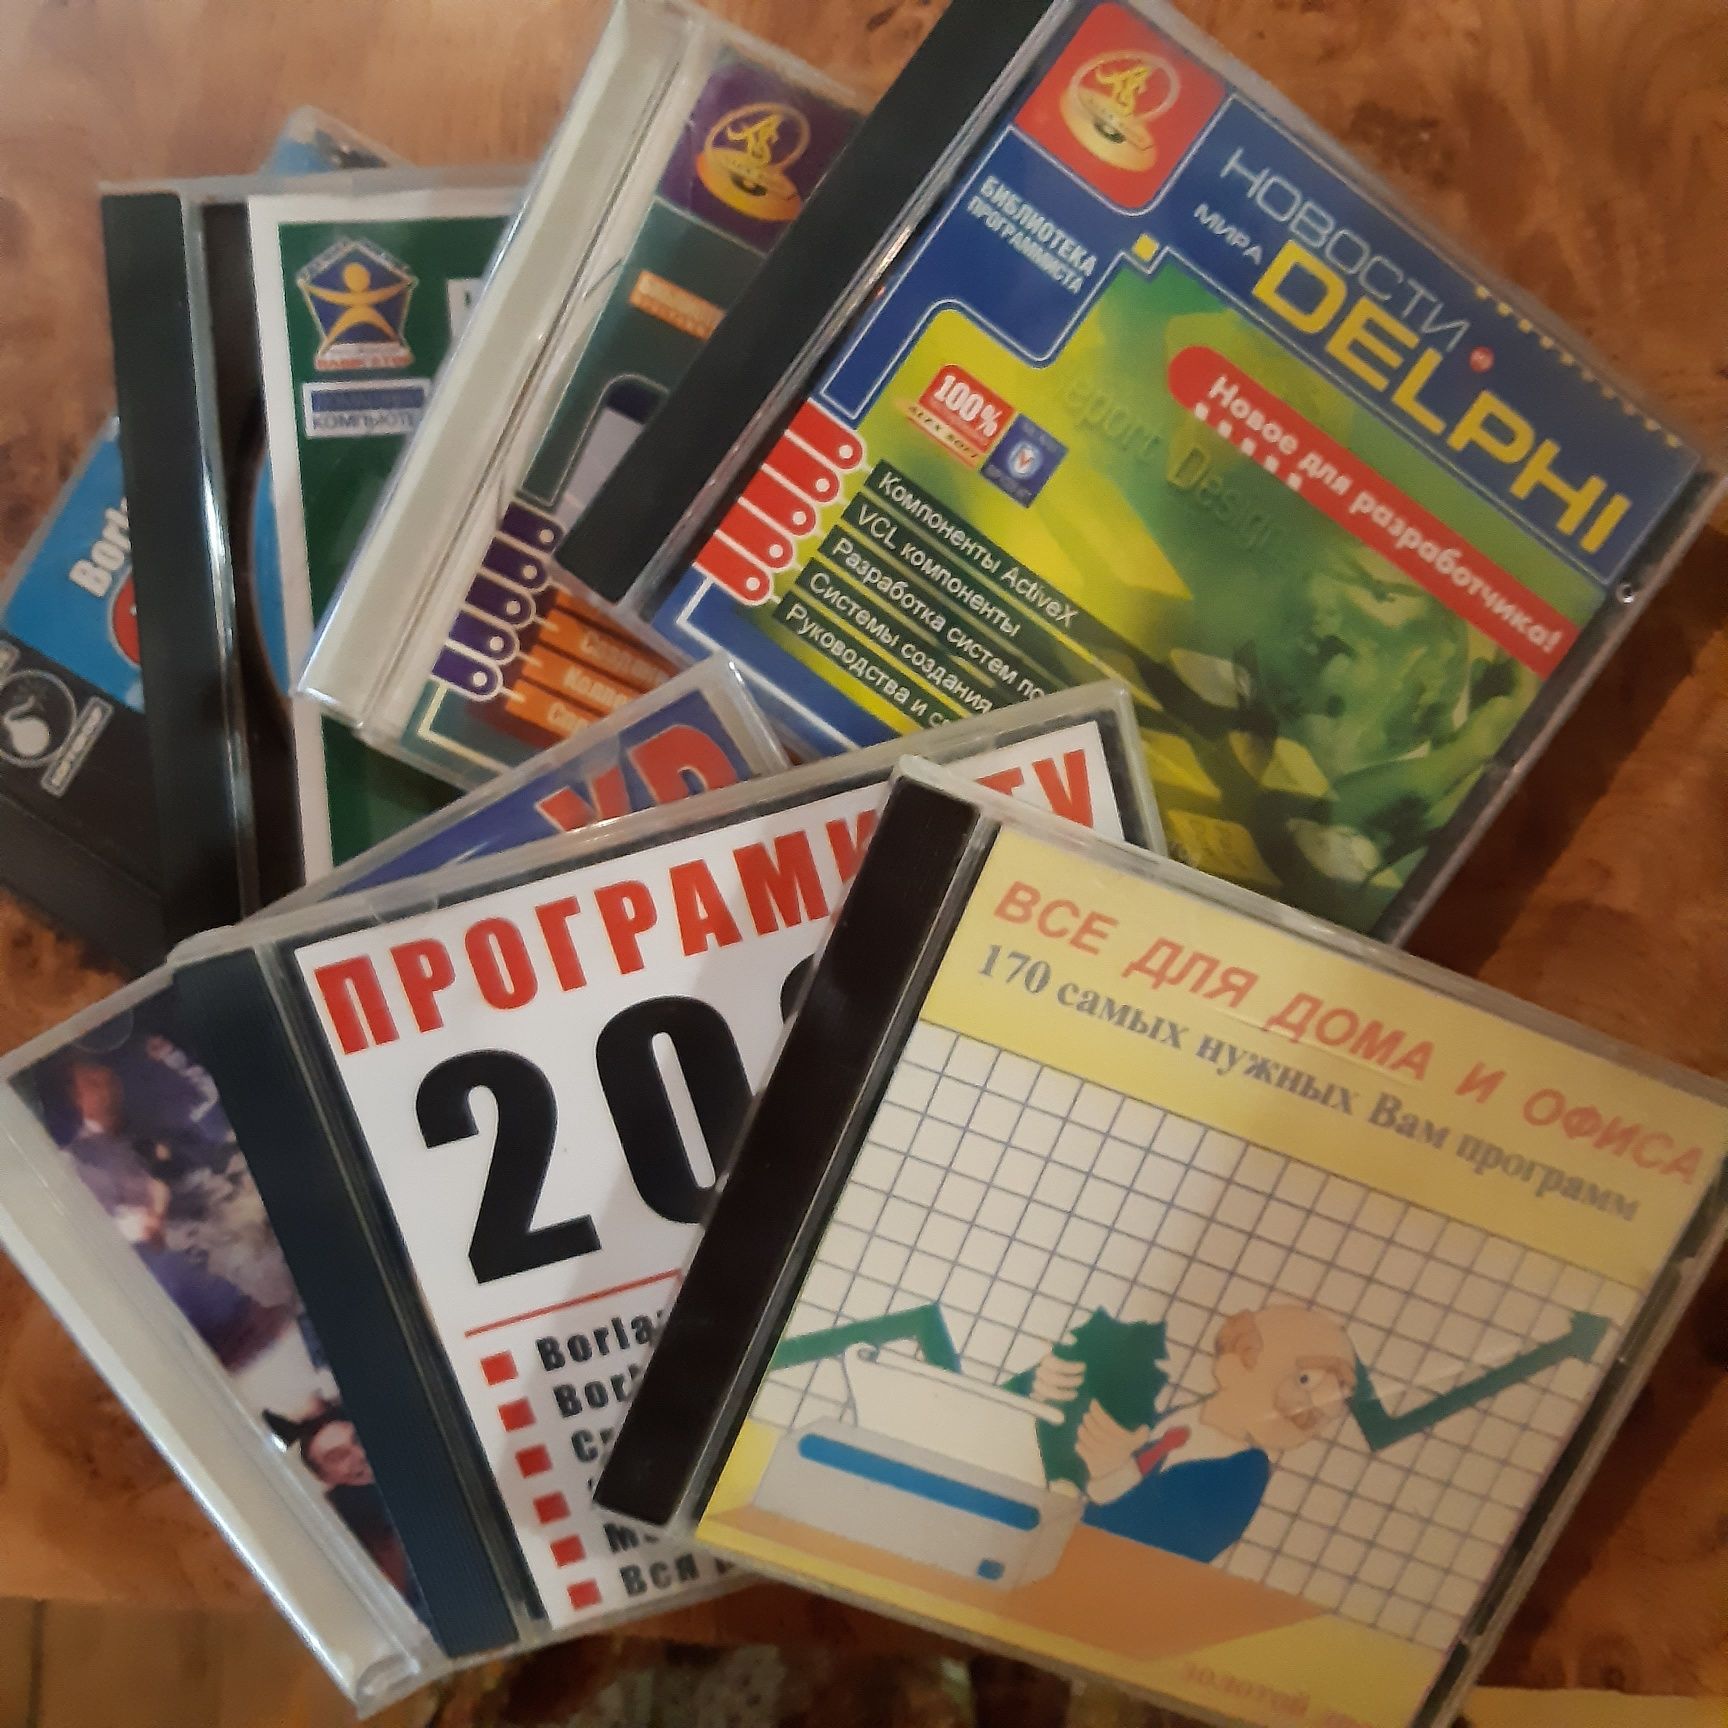 Компакт диски с играми, описаниями программ